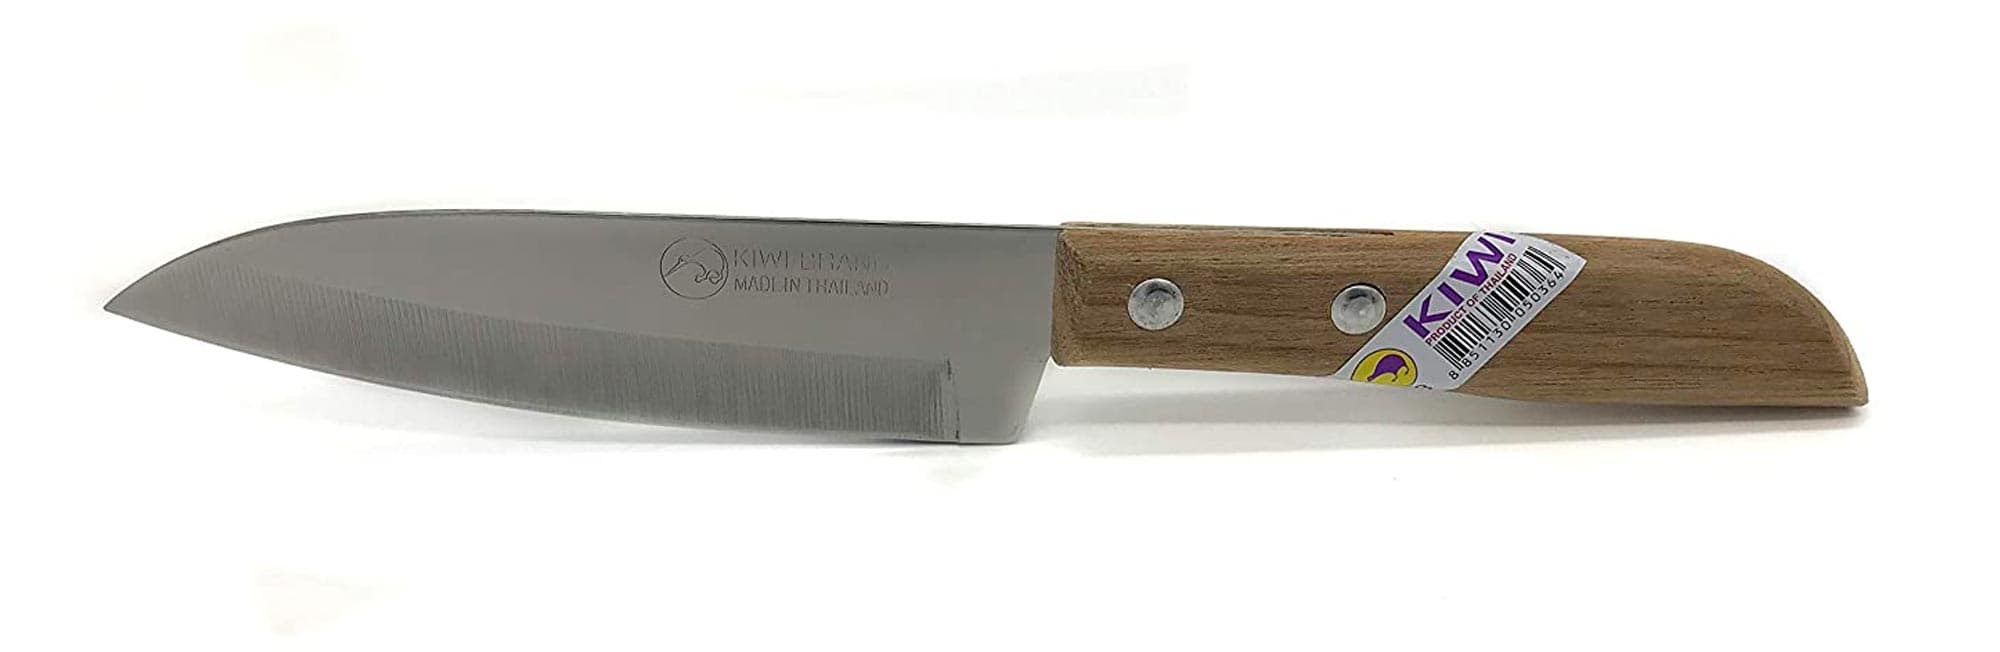 KIWI 4" Sharp Pairing Knife, with wood Handle # 503